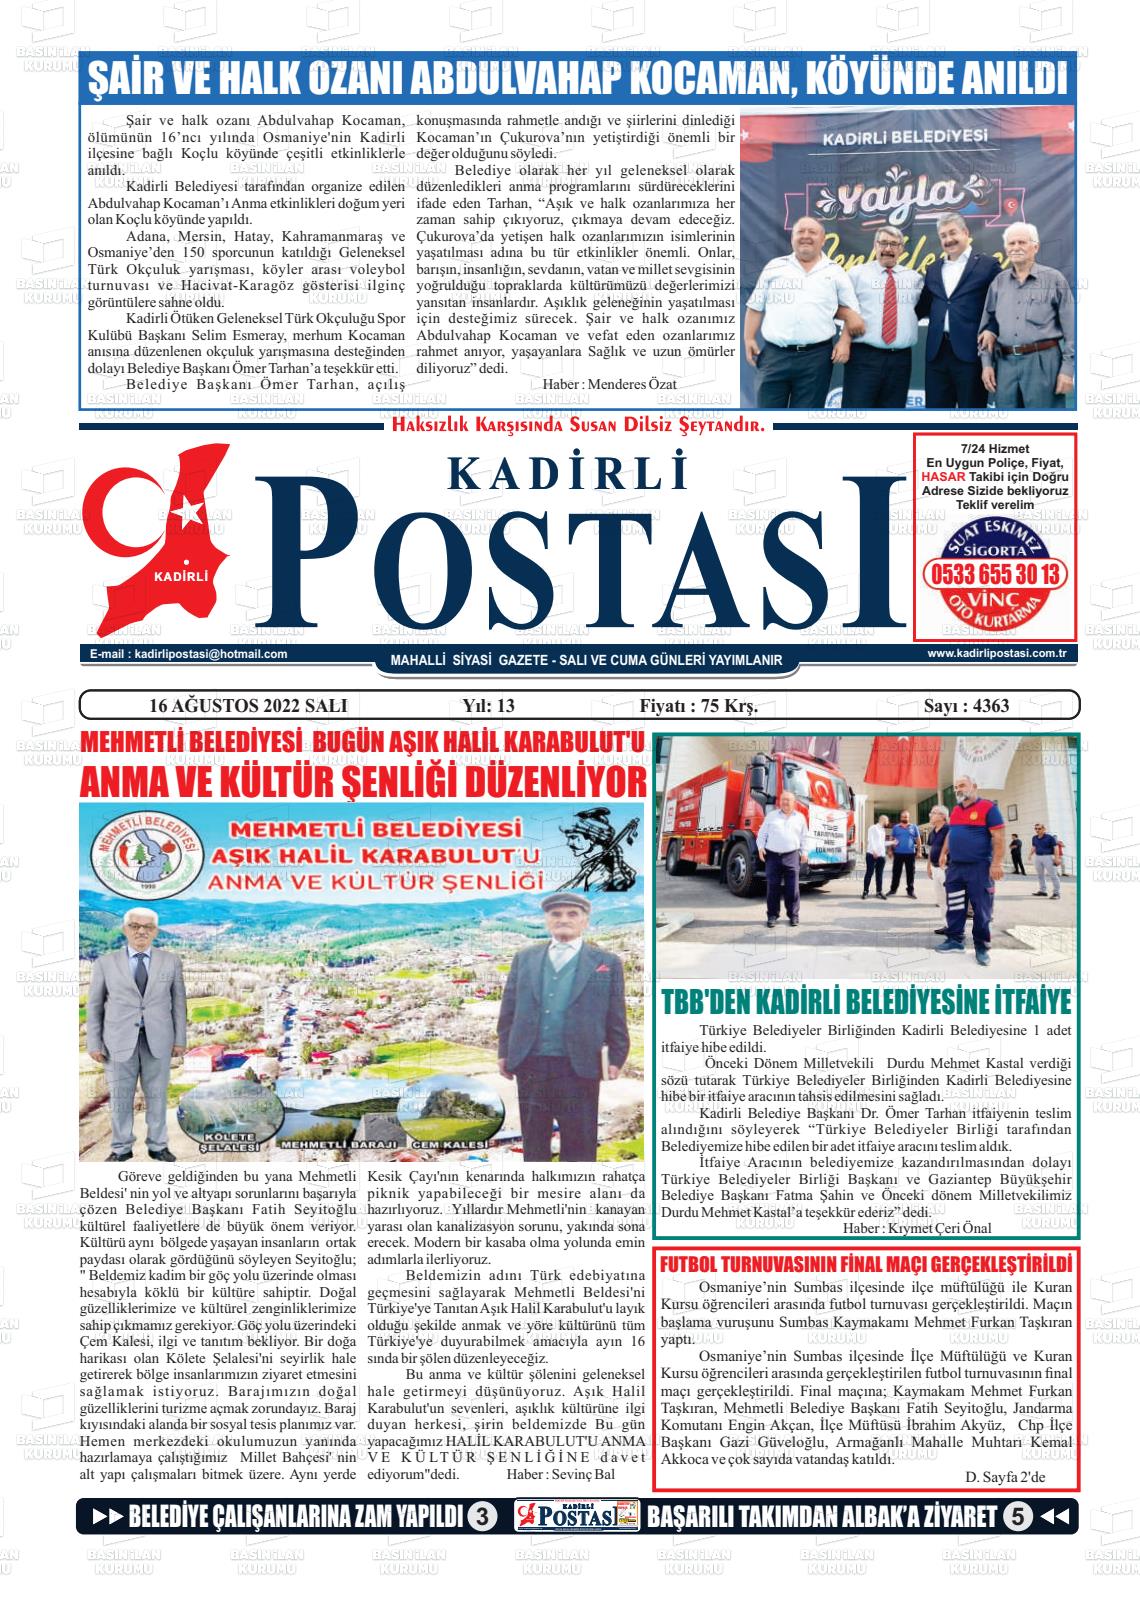 16 Ağustos 2022 Kadirli Postası Gazete Manşeti